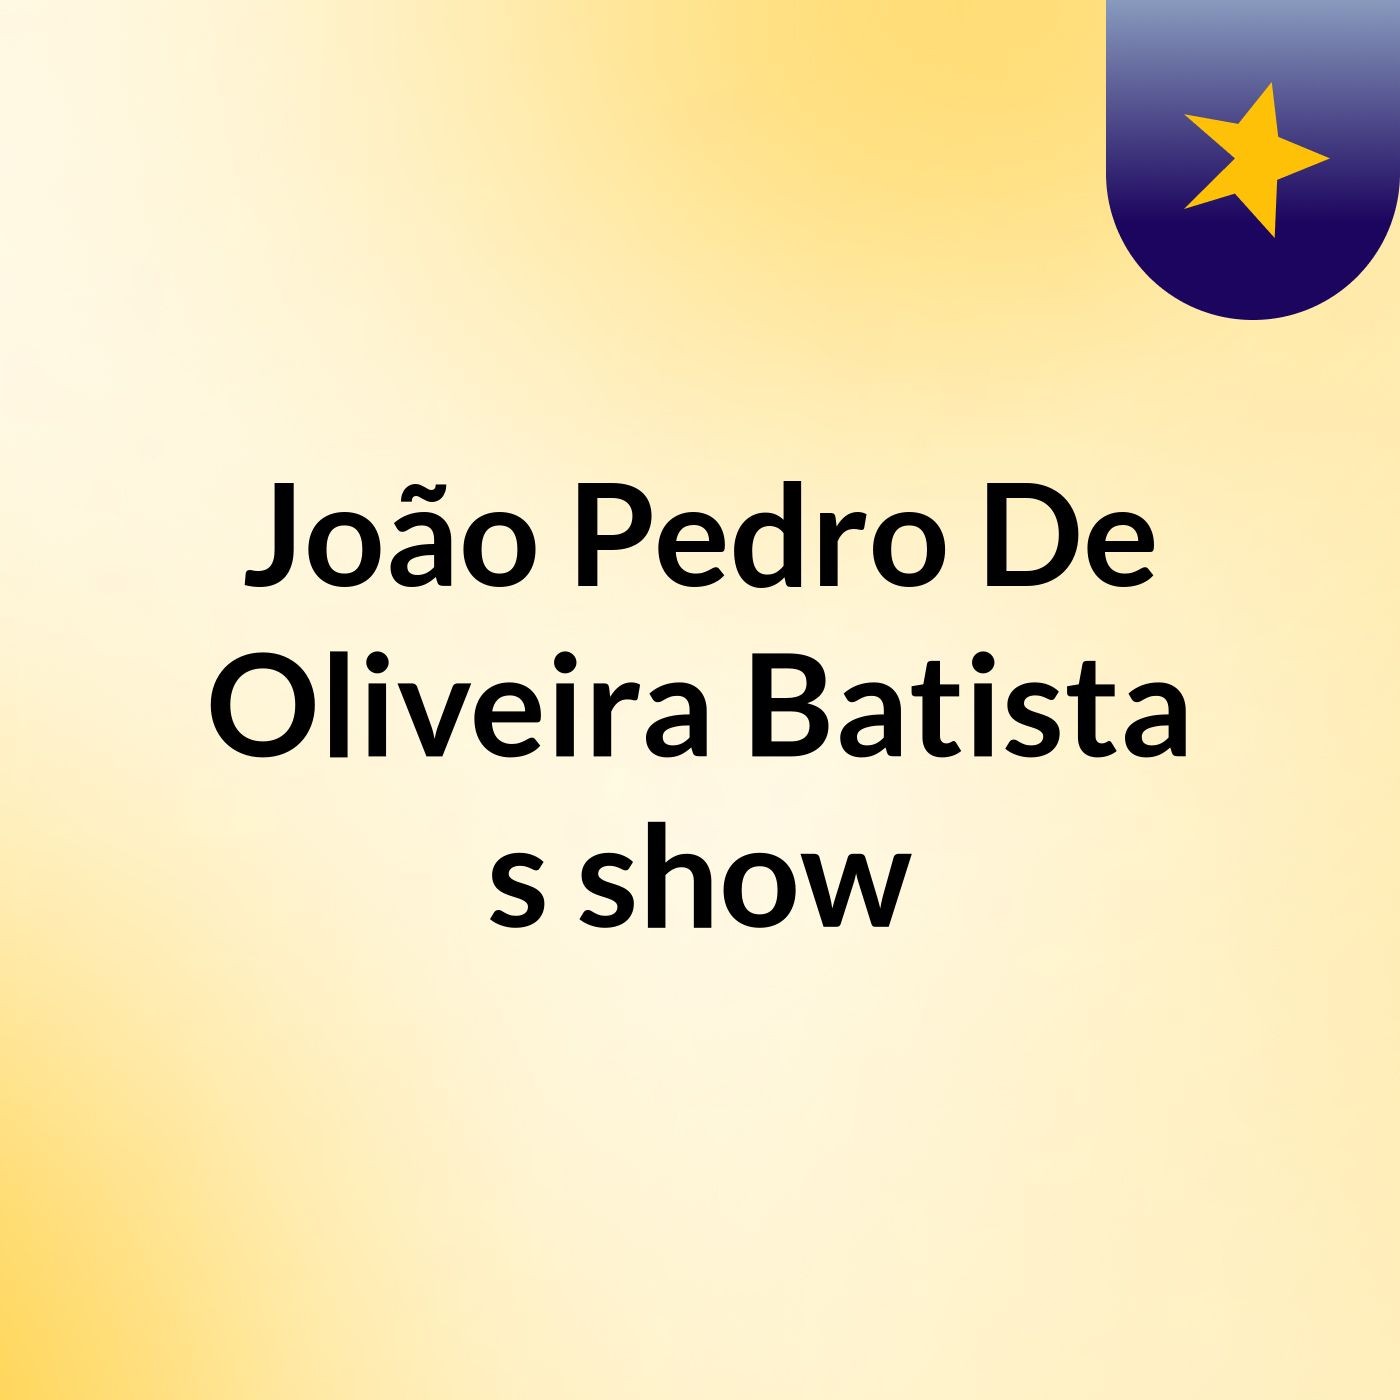 João Pedro De Oliveira Batista's show